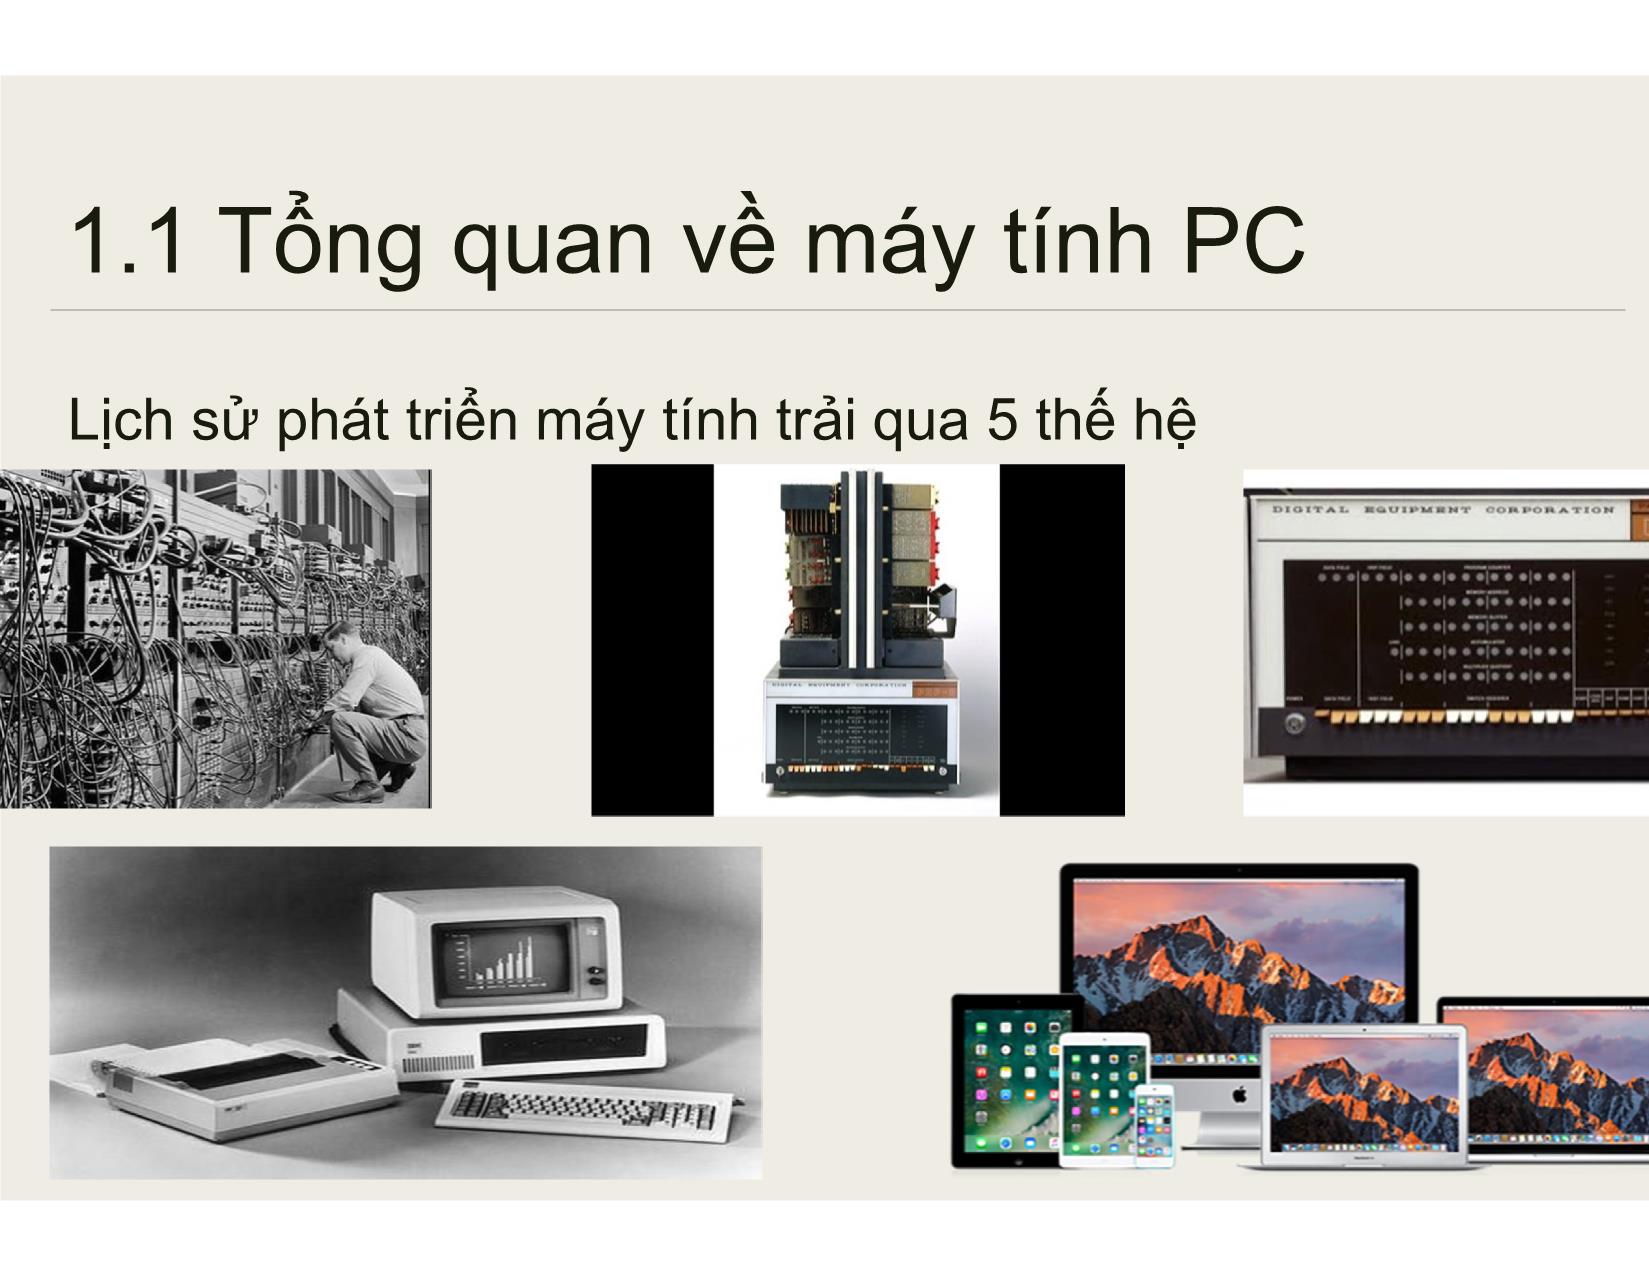 Bài giảng Bảo trì hệ thống - Chương 1: Tổng quan về PC và bảo trì các thiết bị máy tính - Nguyễn Lê Minh trang 8